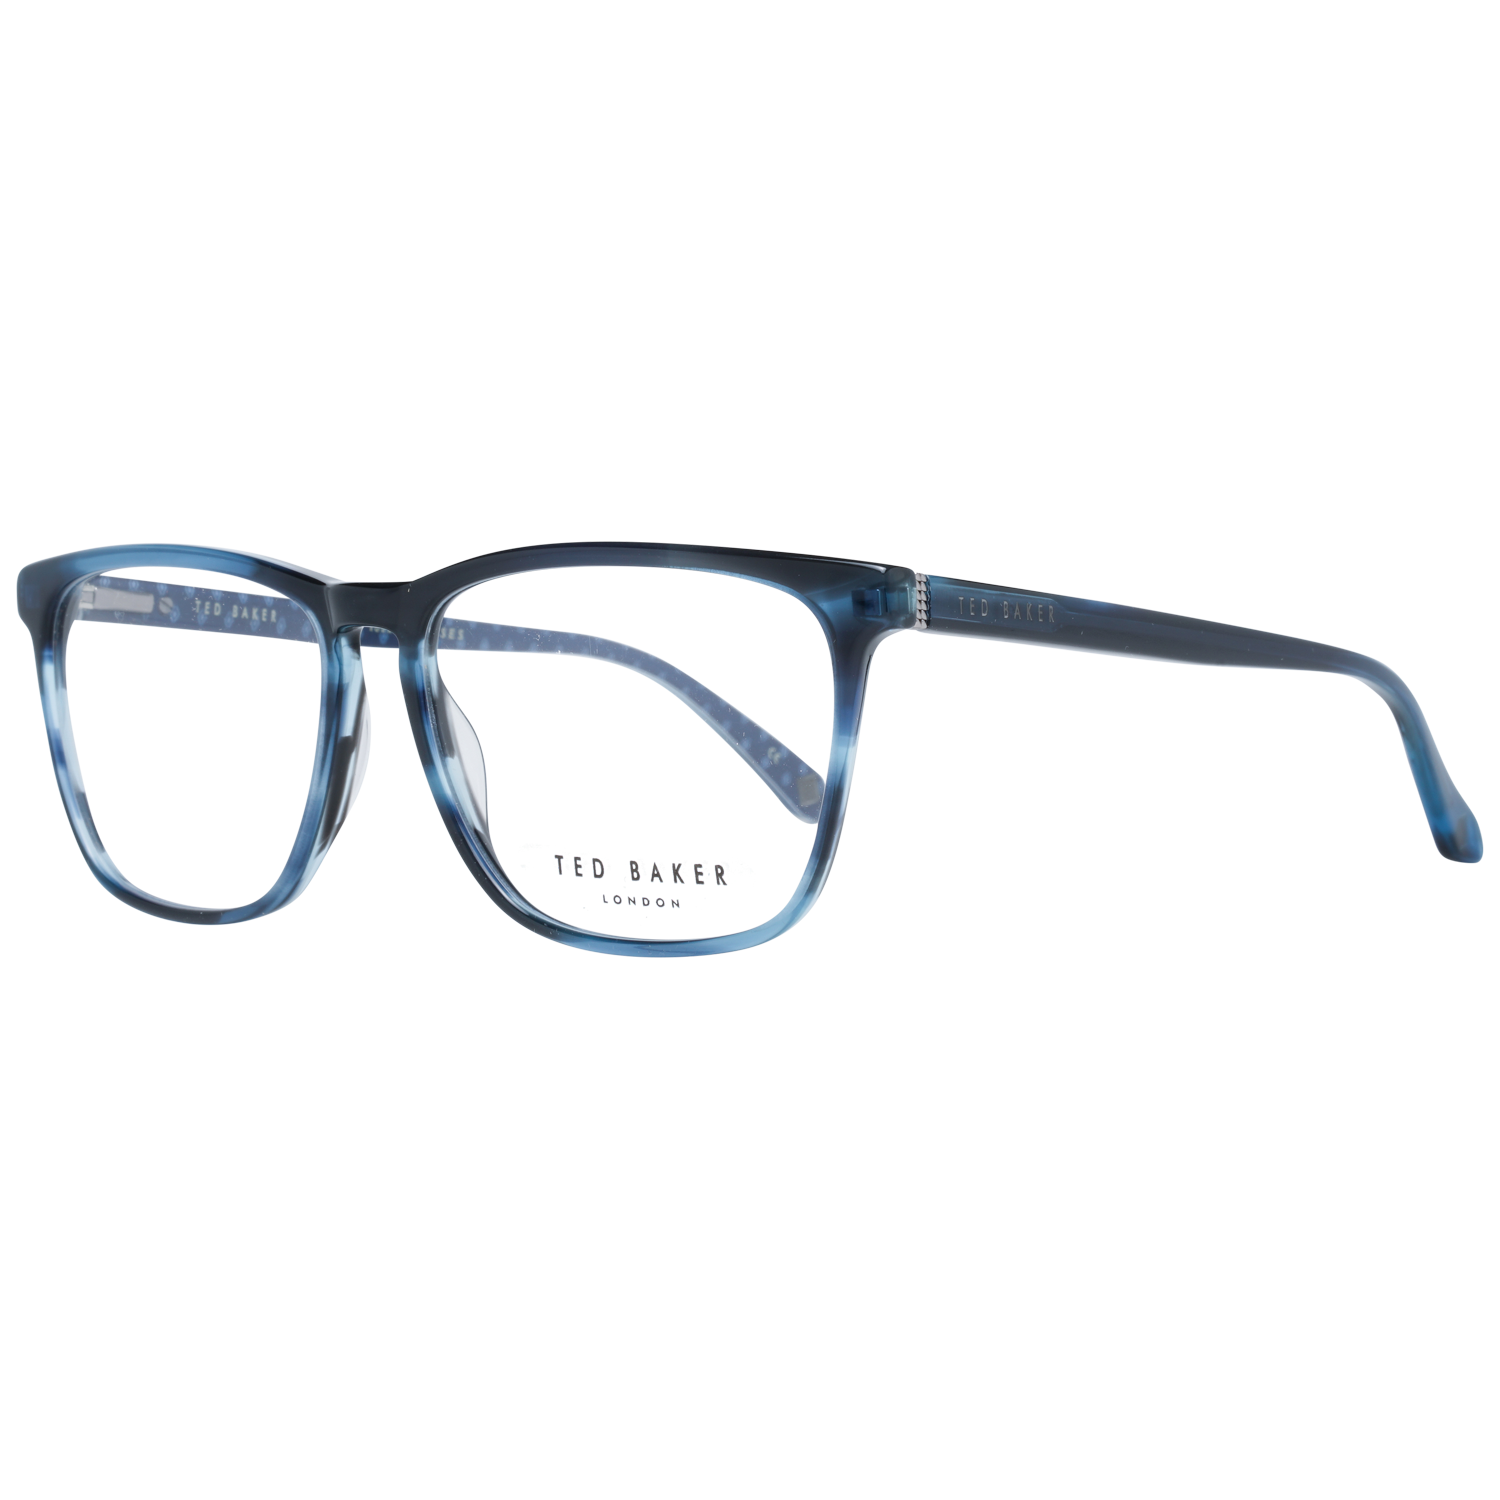 Ted Baker Frames Ted Baker Optical Frame TB8208 652 54 Carlson Eyeglasses Eyewear UK USA Australia 